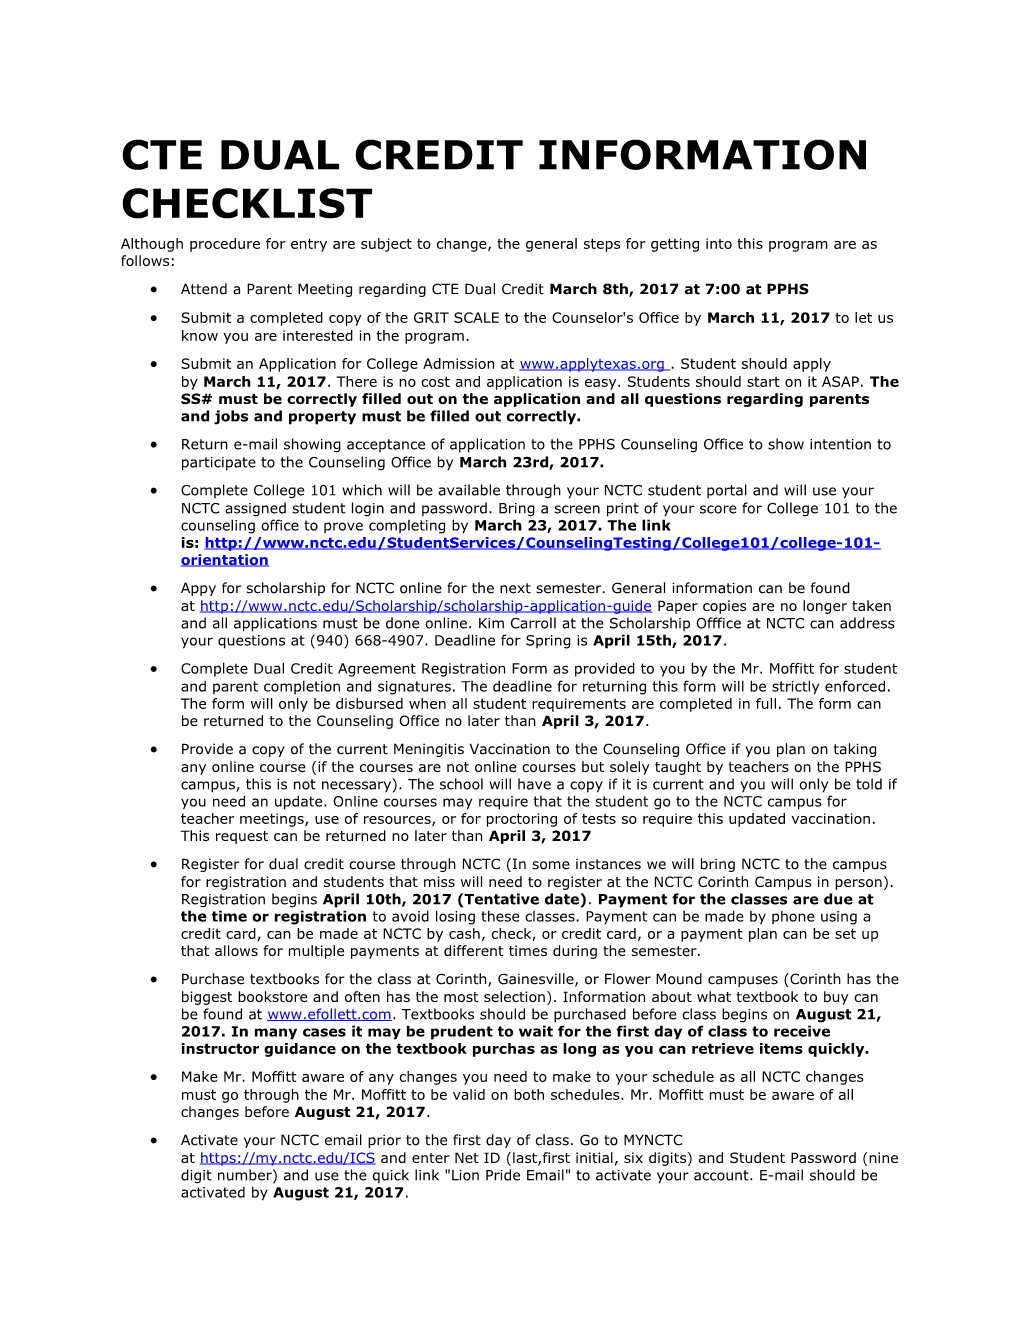 Cte Dual Credit Information Checklist